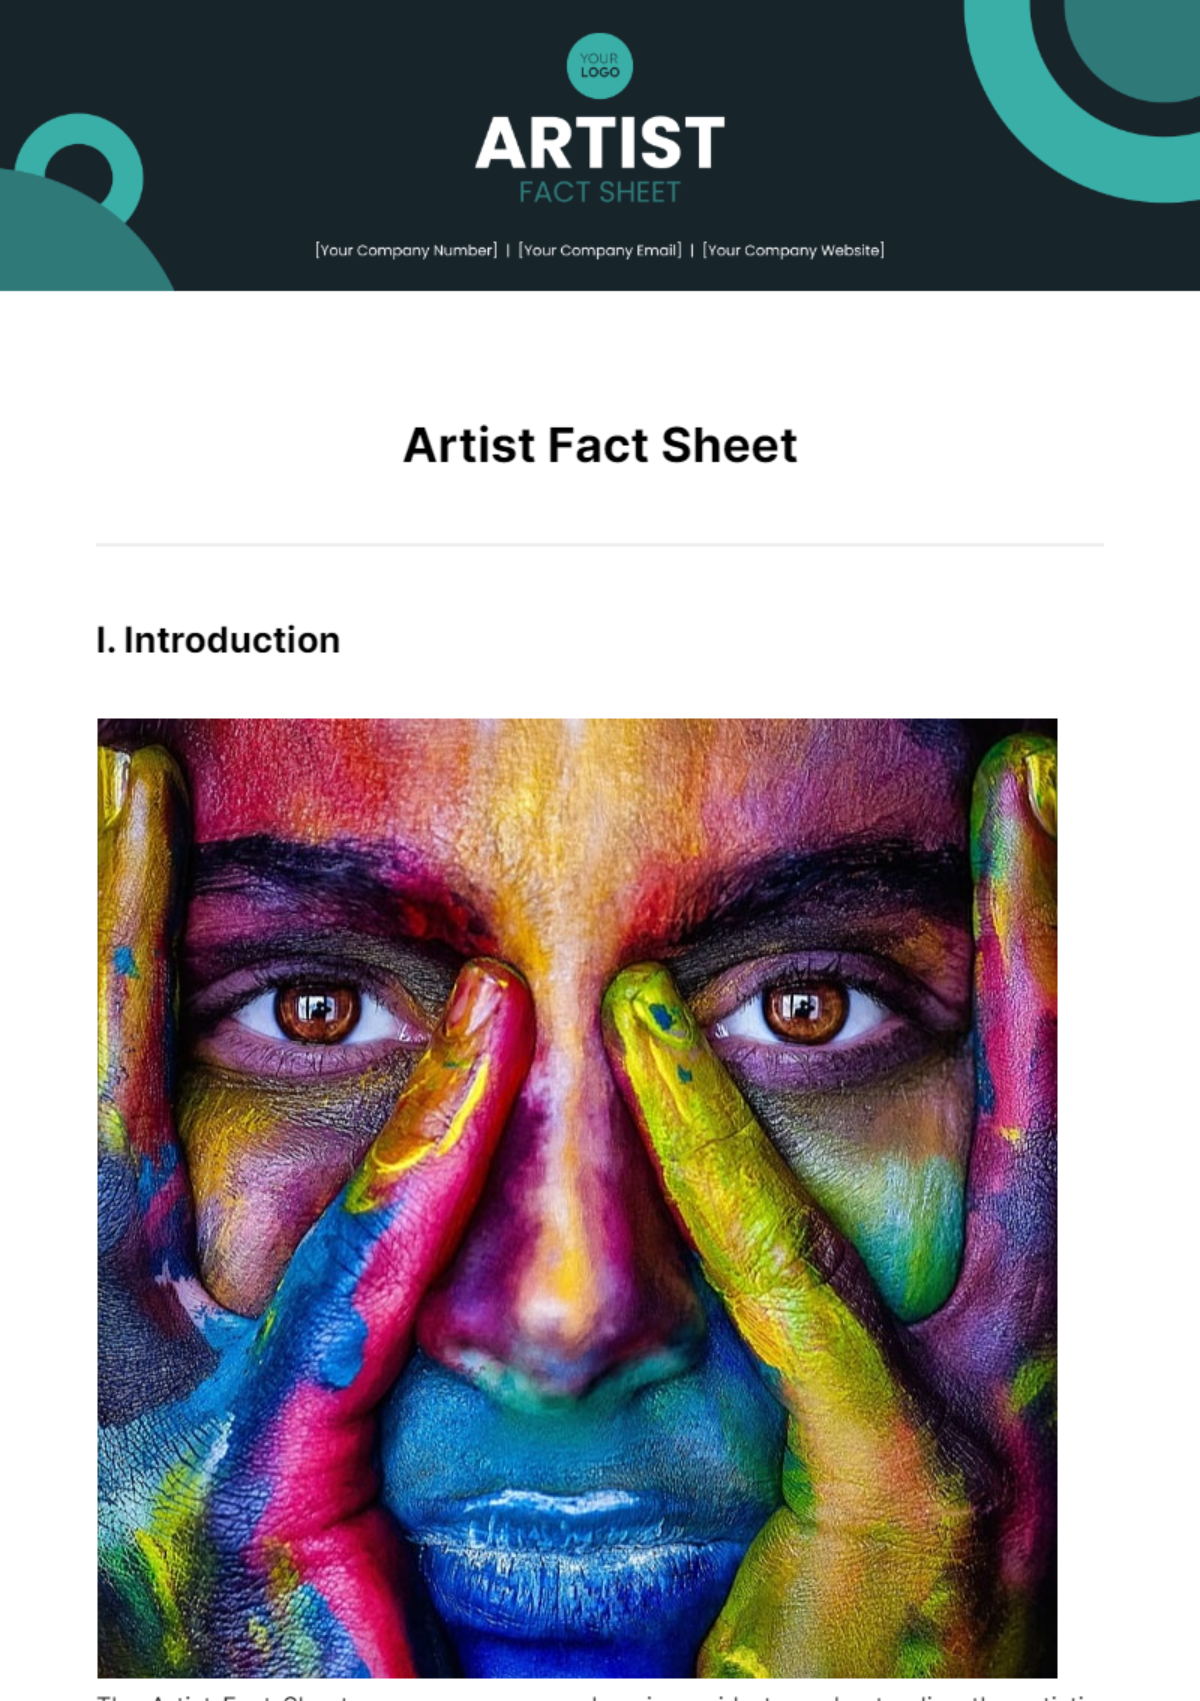 Artist Fact Sheet Template